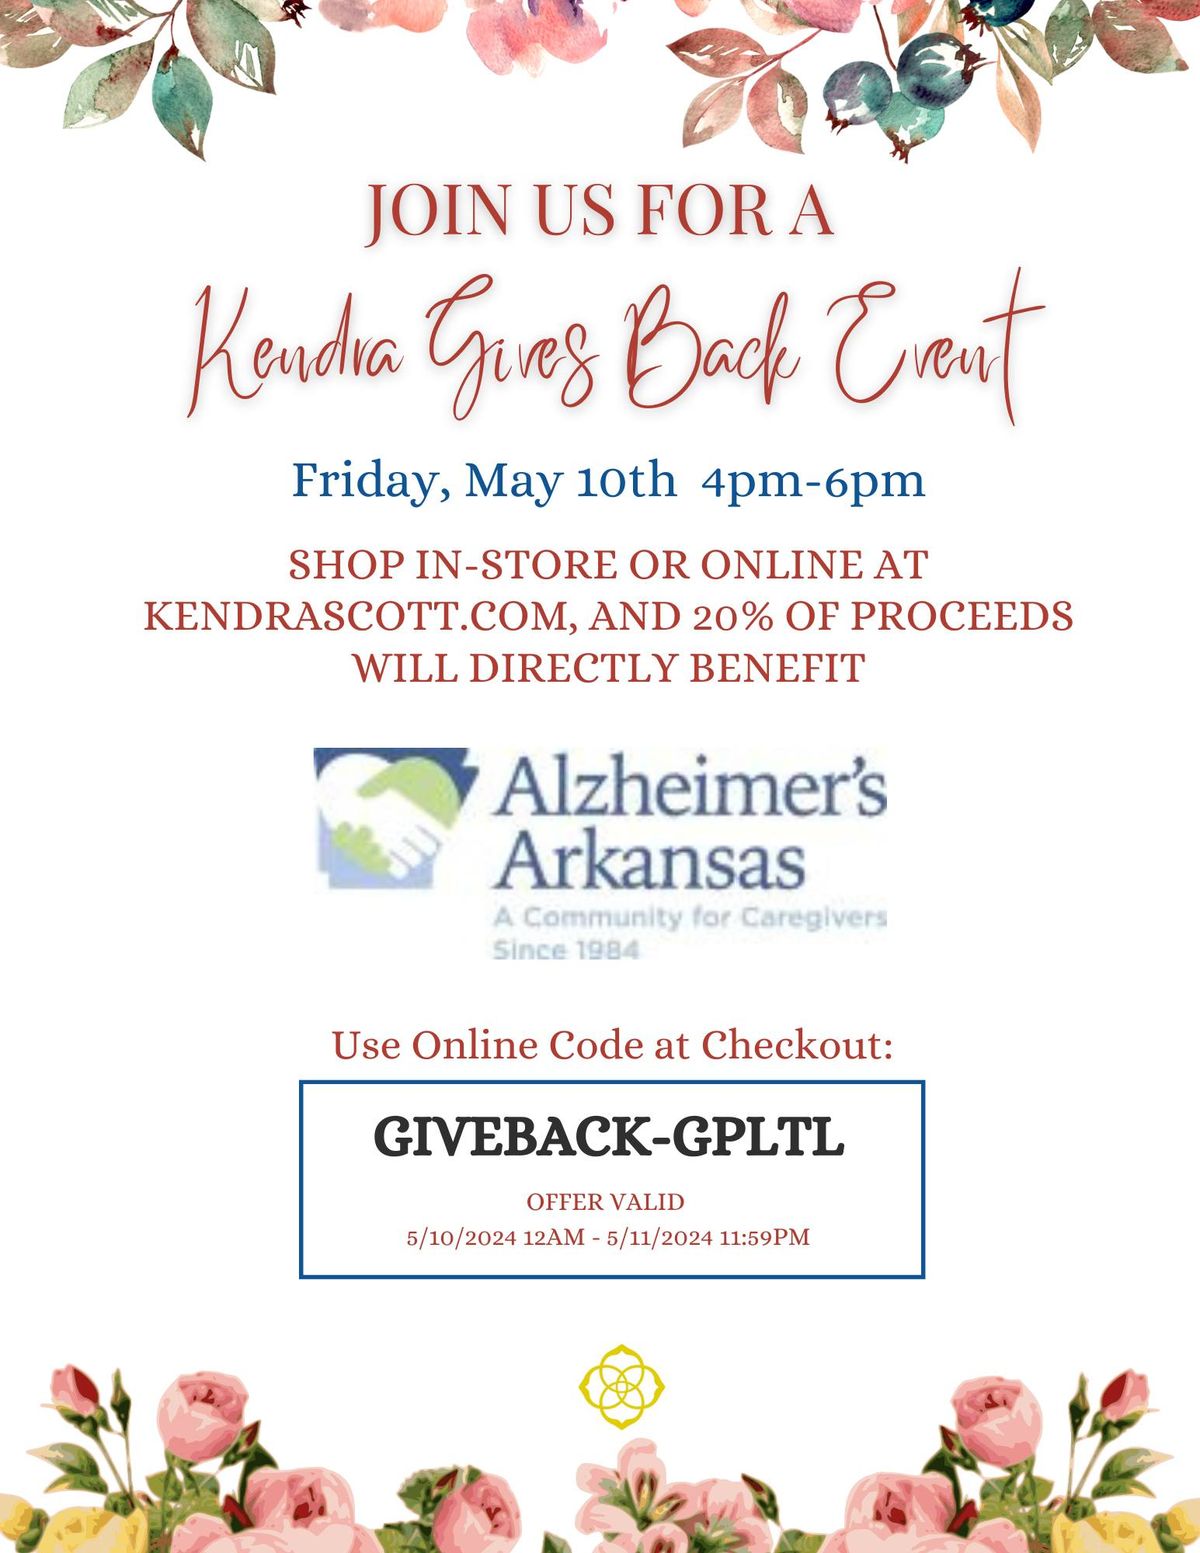 Kendra Gives Back benefitting Alzheimer's Arkansas